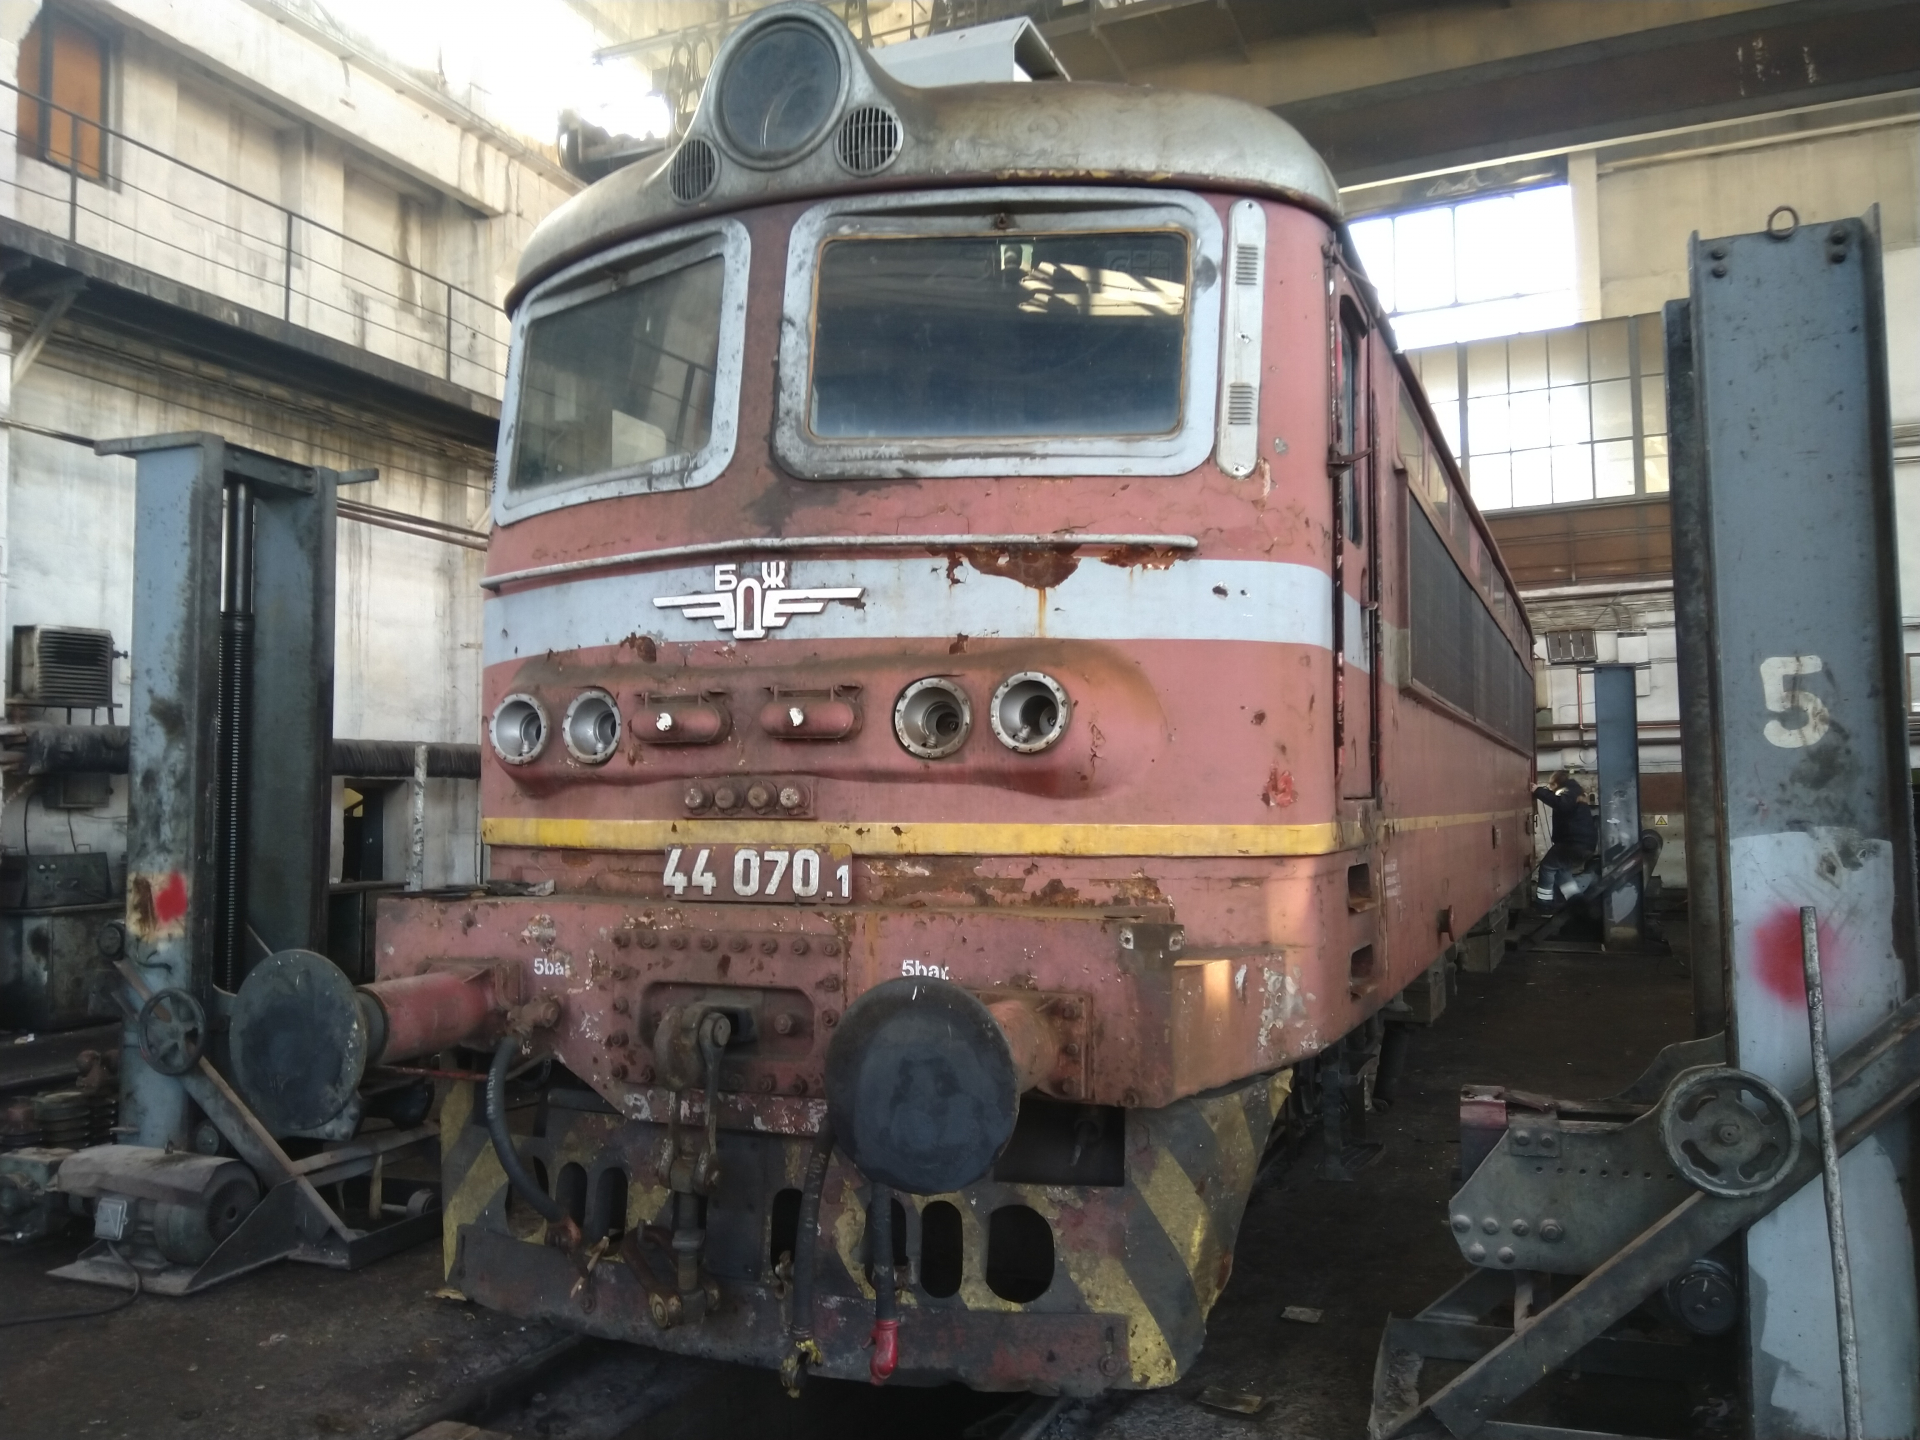 Още един изцяло обновен локомотив на БДЖ вече пътува по железопътната мрежа